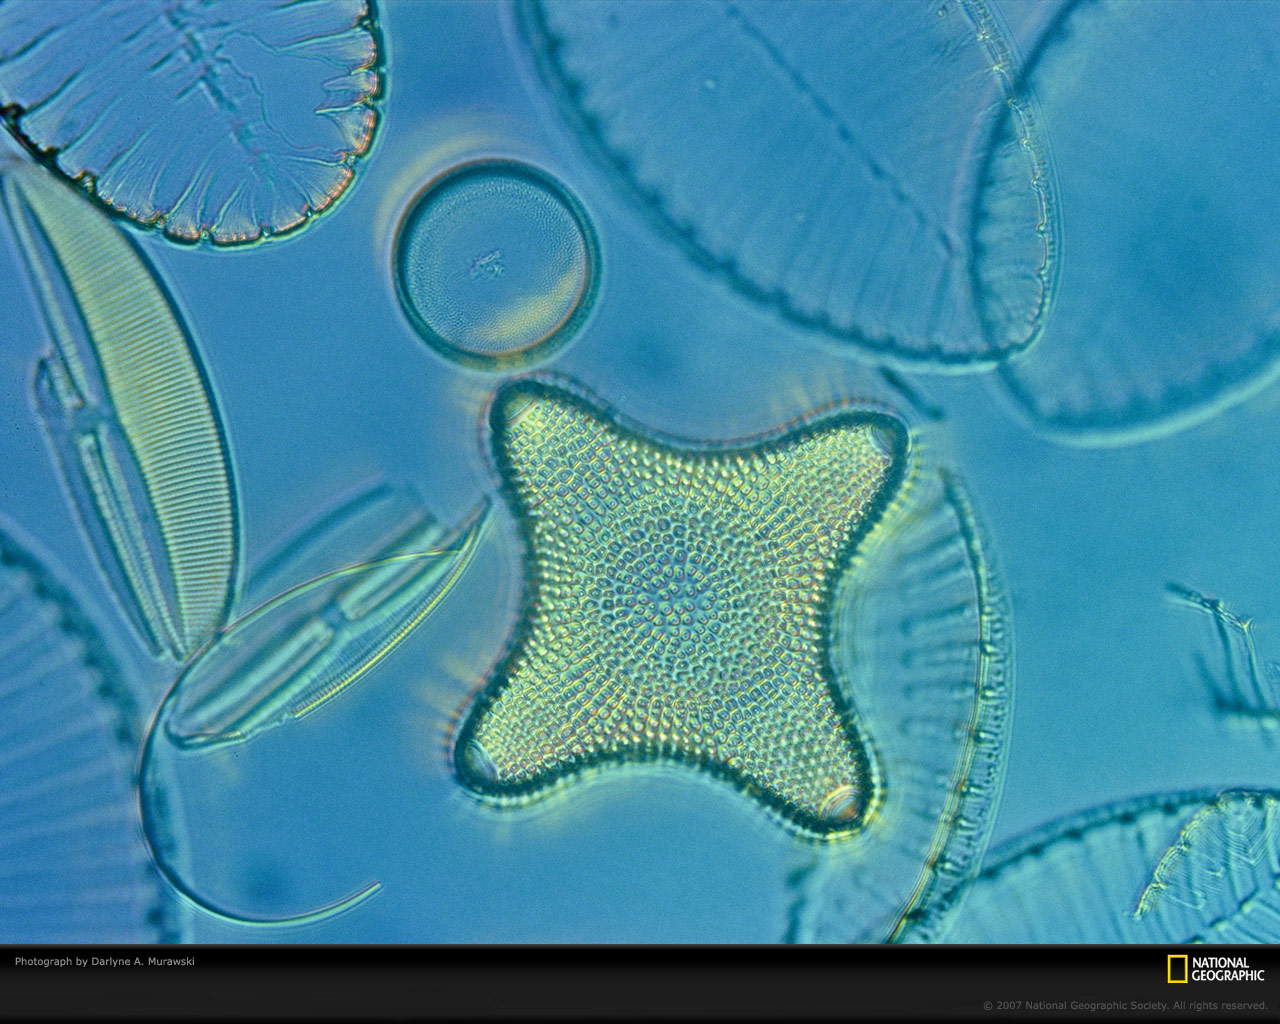 Fitoplâncton visto no microscópio. Saiba mais sobre o Dia dos Oceanos e a importância dos oceanos para vida na Terra!